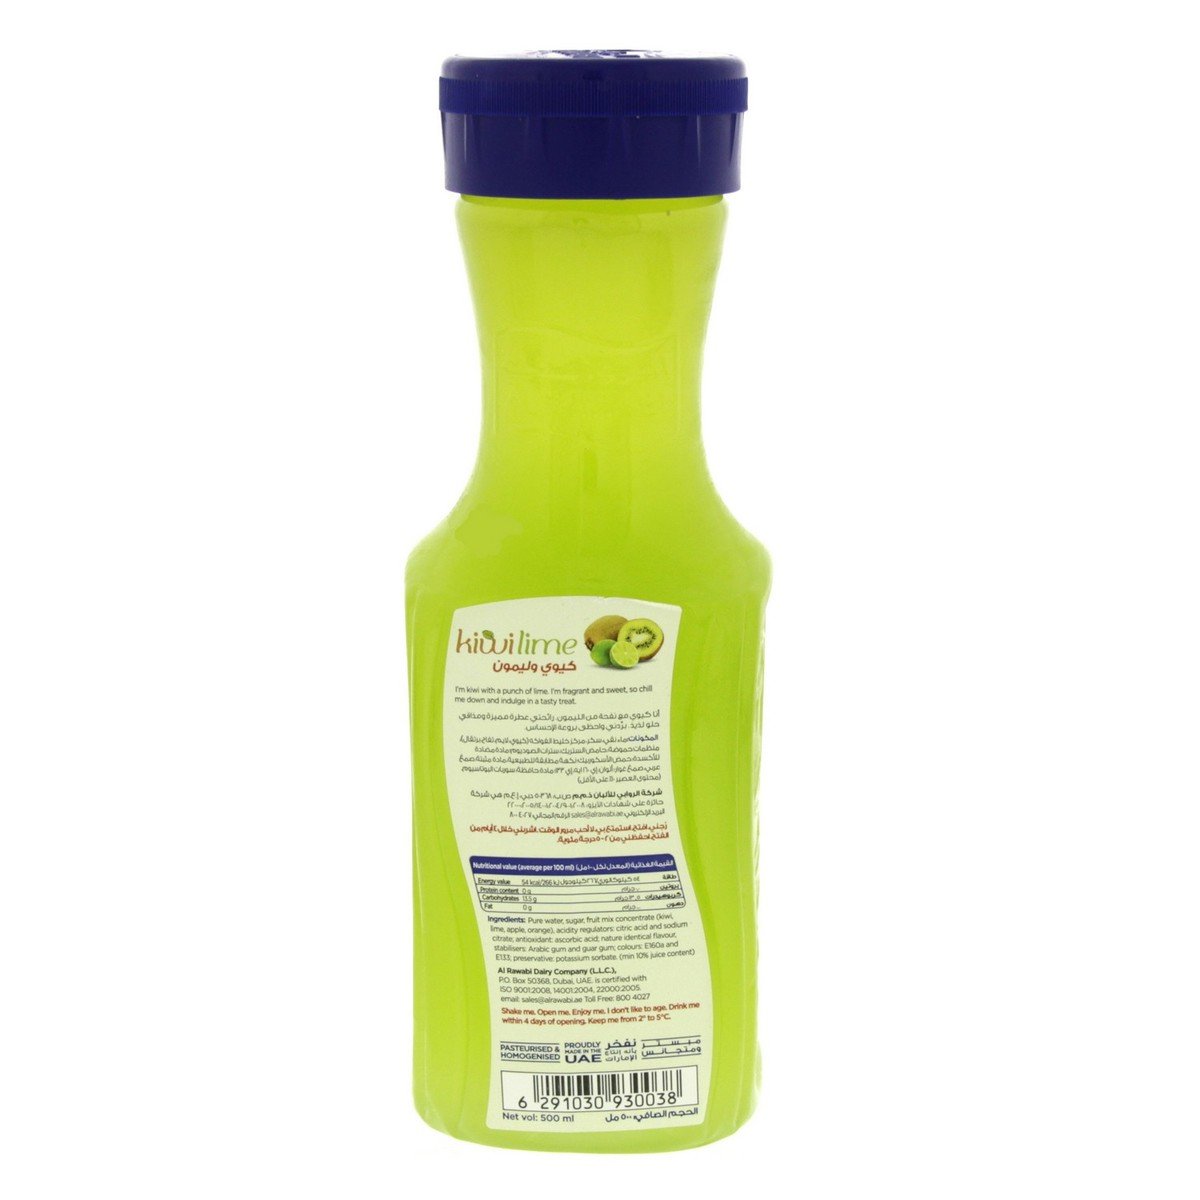 Al Rawabi Kiwi Lime Juice 500 ml